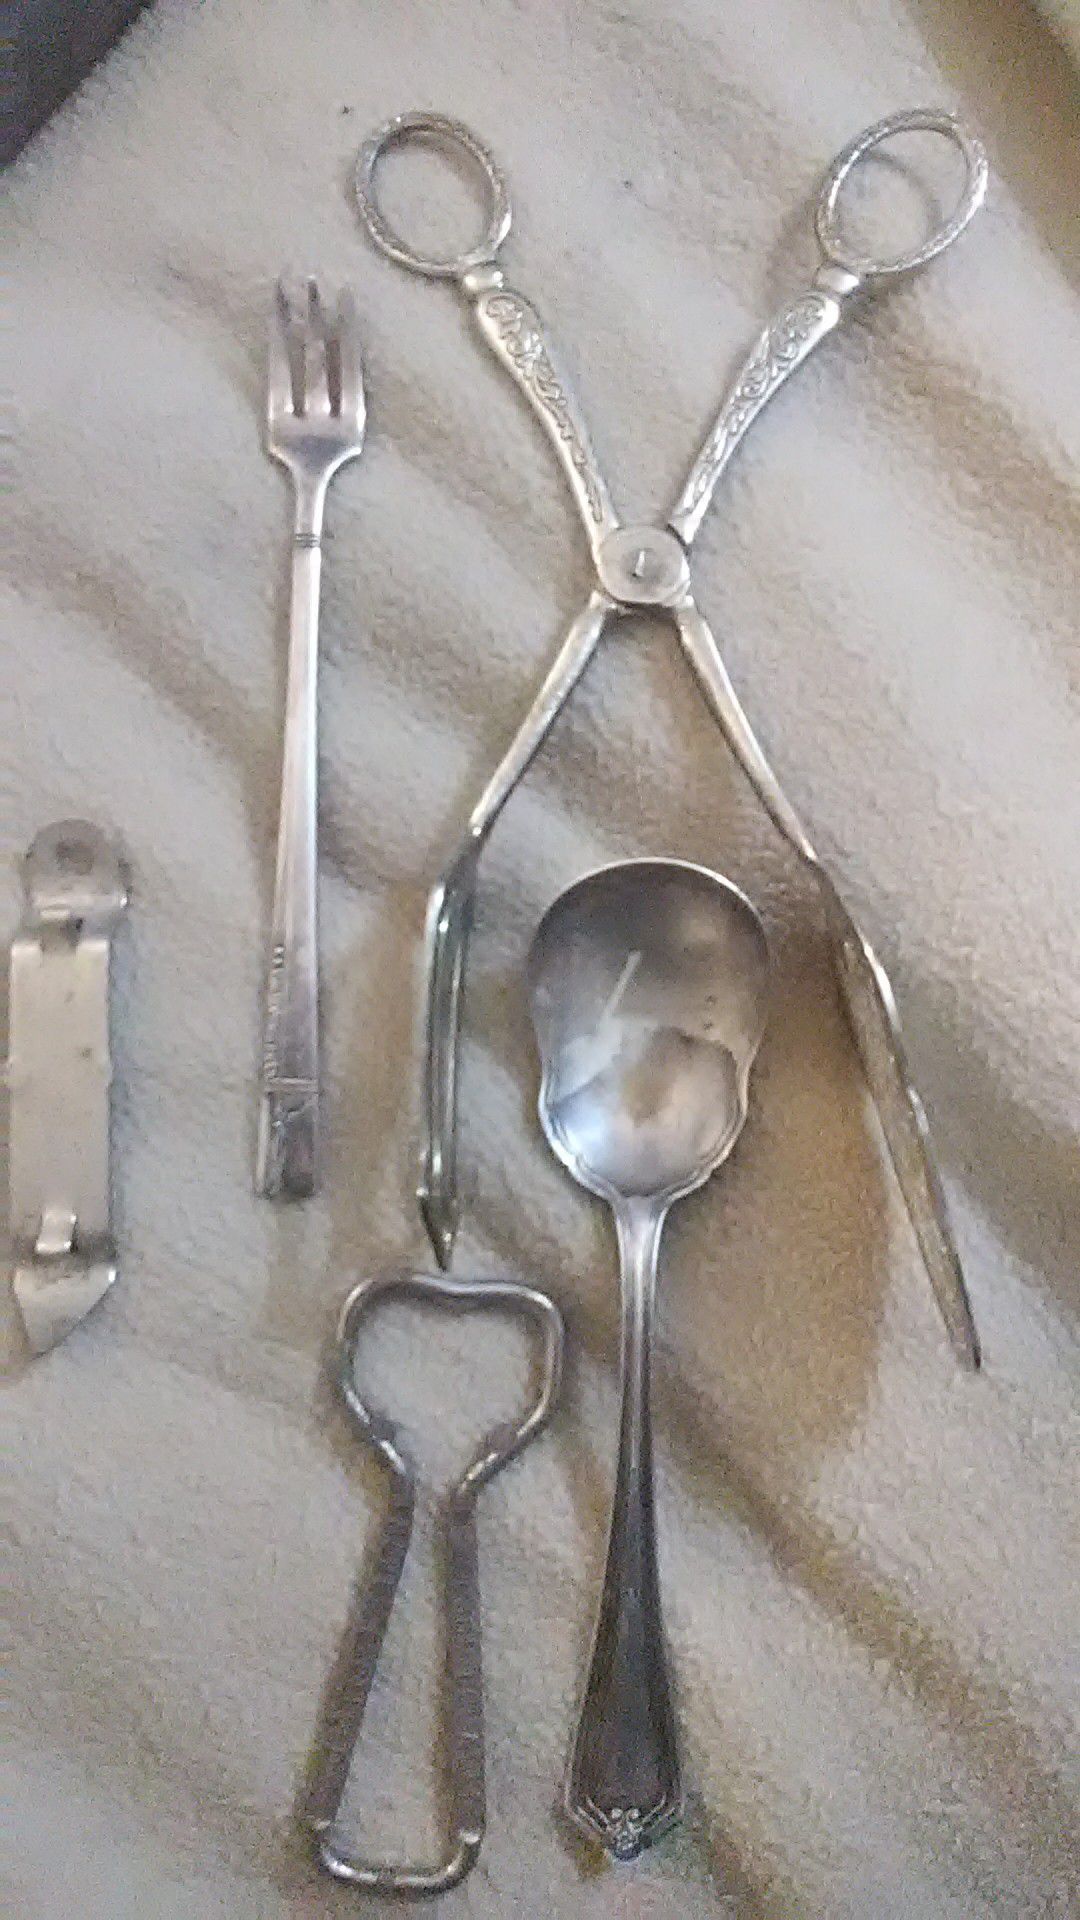 Old silver kitchen utensils